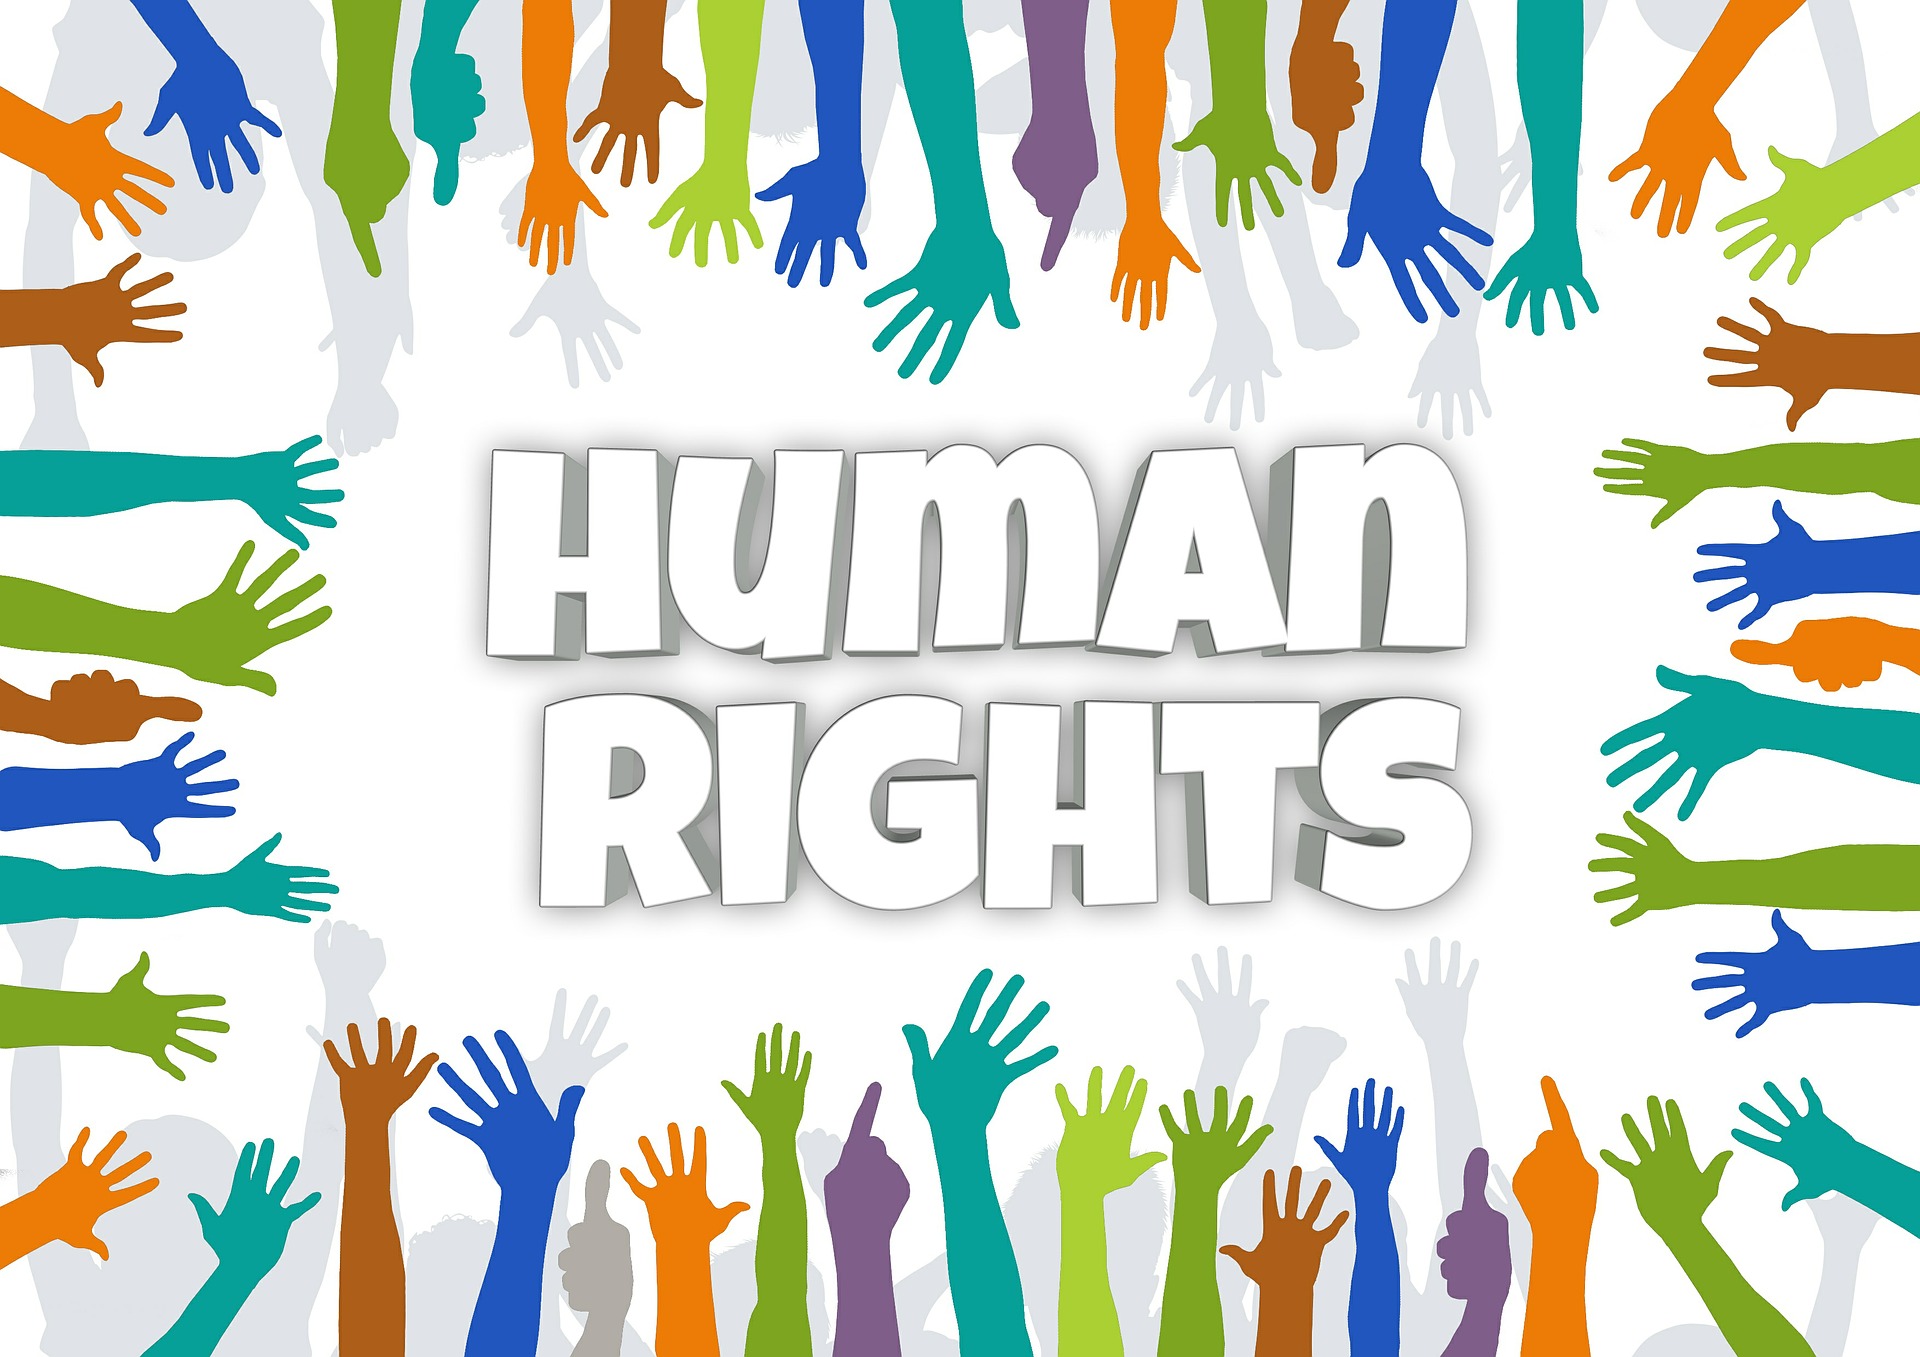 Bądźmy Przedstawicielami Zmiany - wzory do naśladowania w obronie praw człowieka...